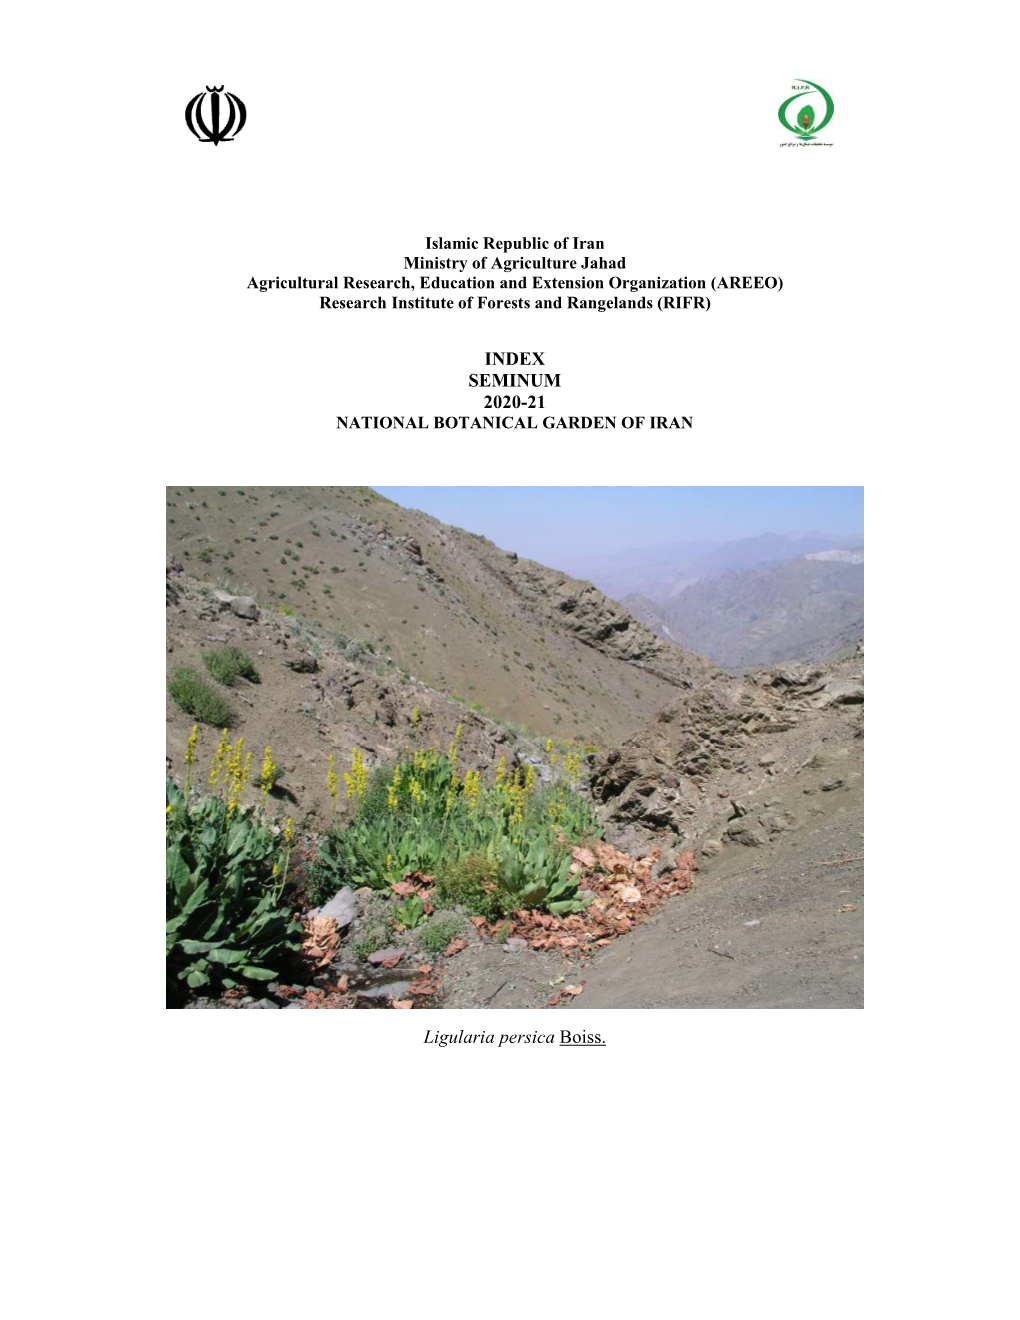 INDEX SEMINUM 2020-21 Ligularia Persica Boiss